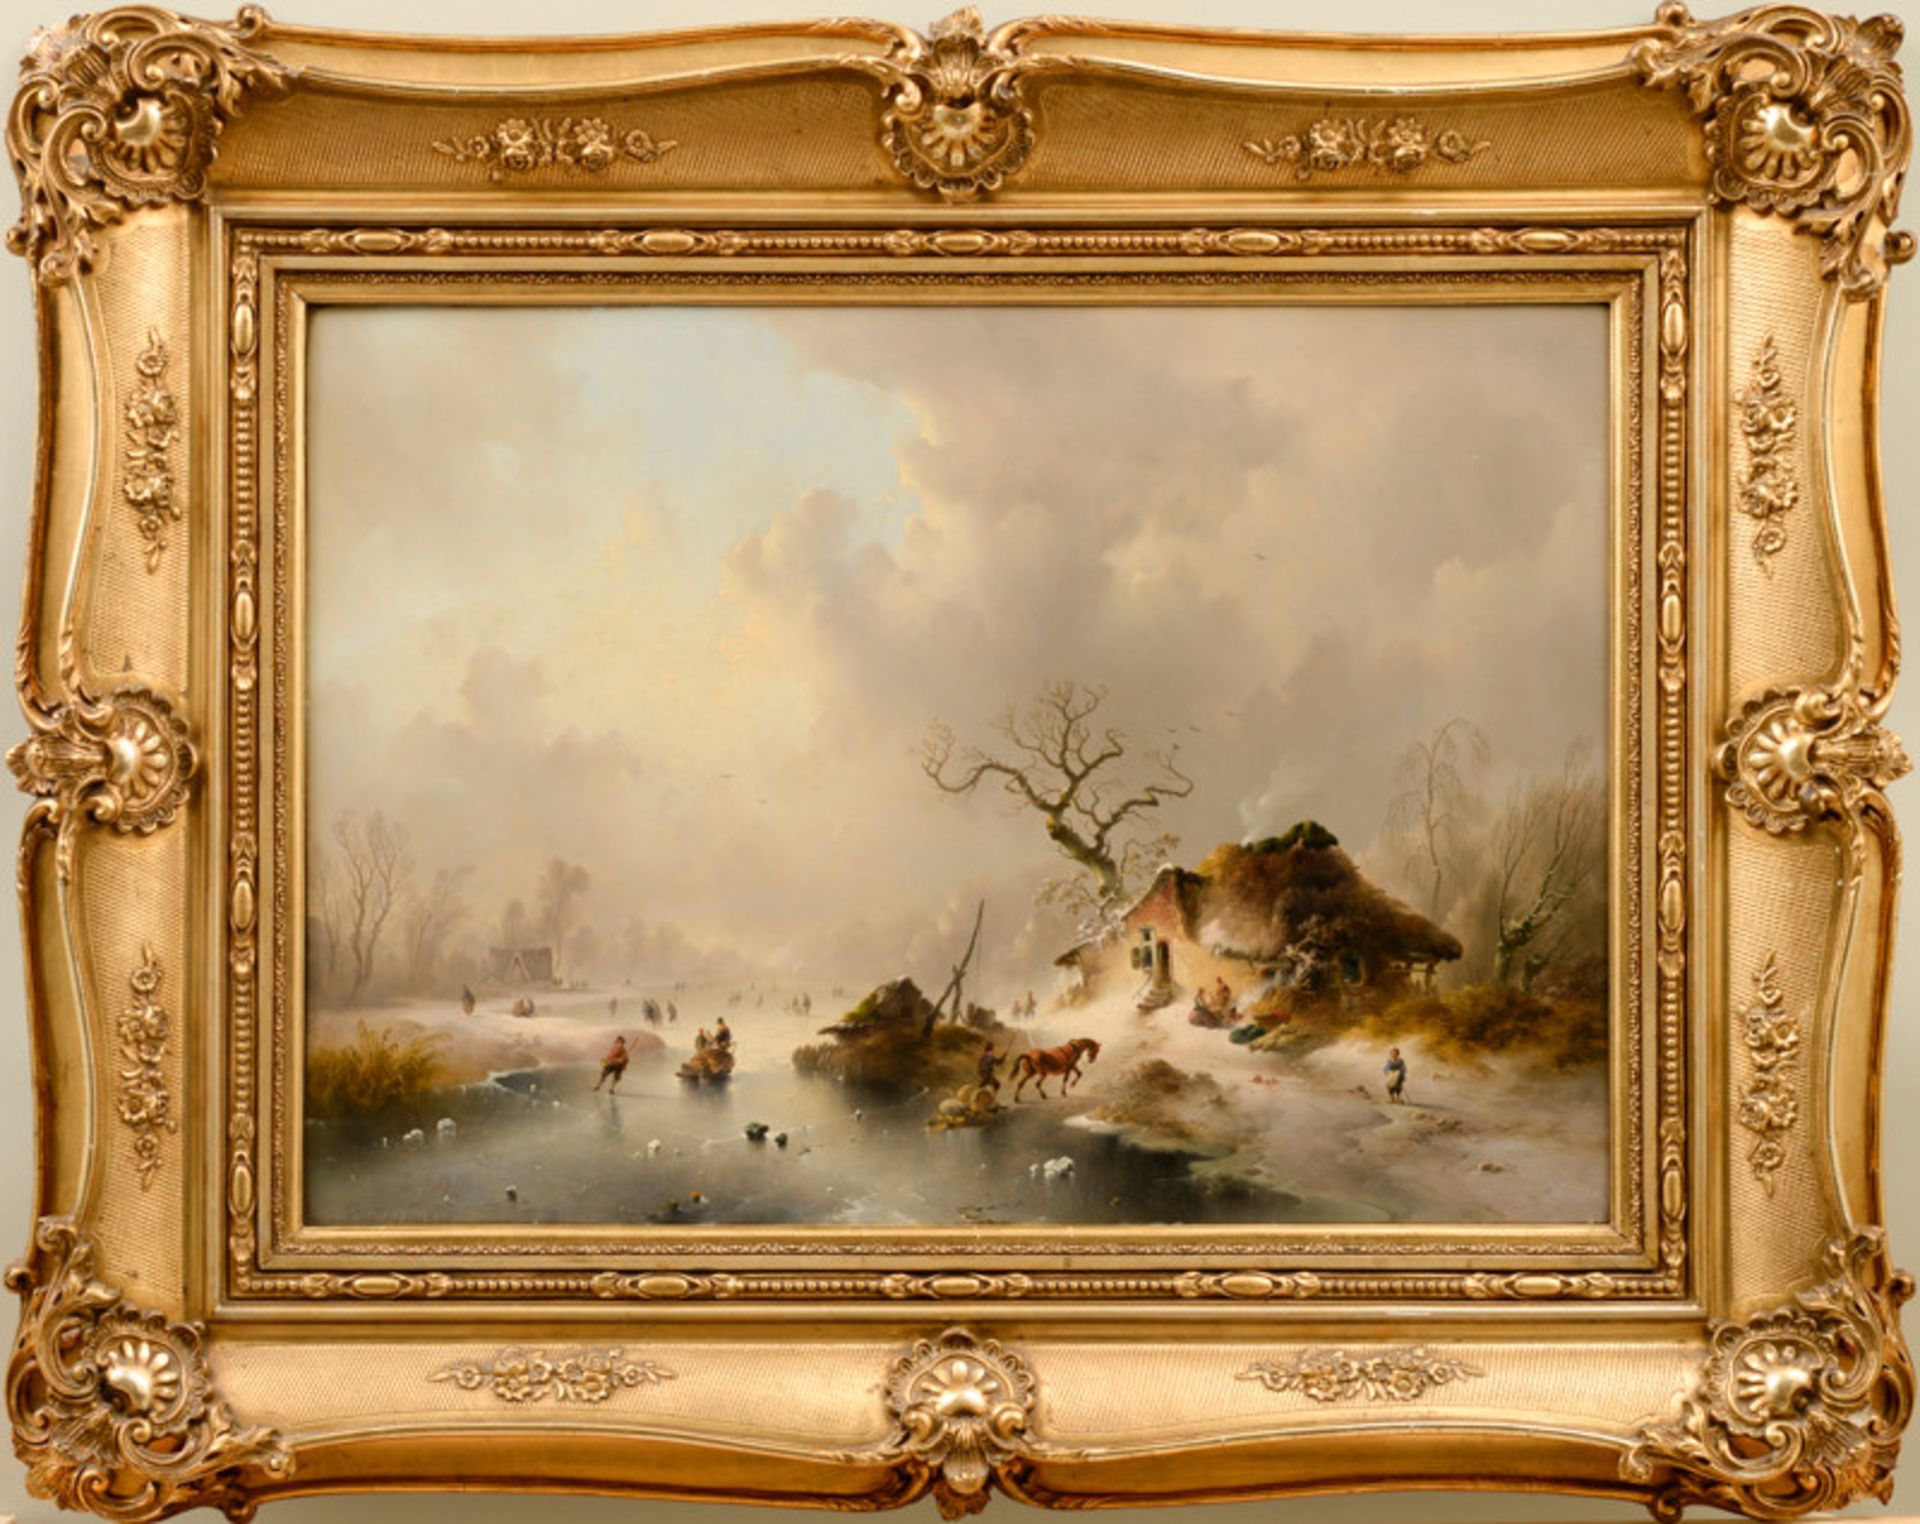 Charles van der Eycken (1809 - 1891) - Öl auf Mahagoni-Holzplatte, "Niederländische Winteridylle